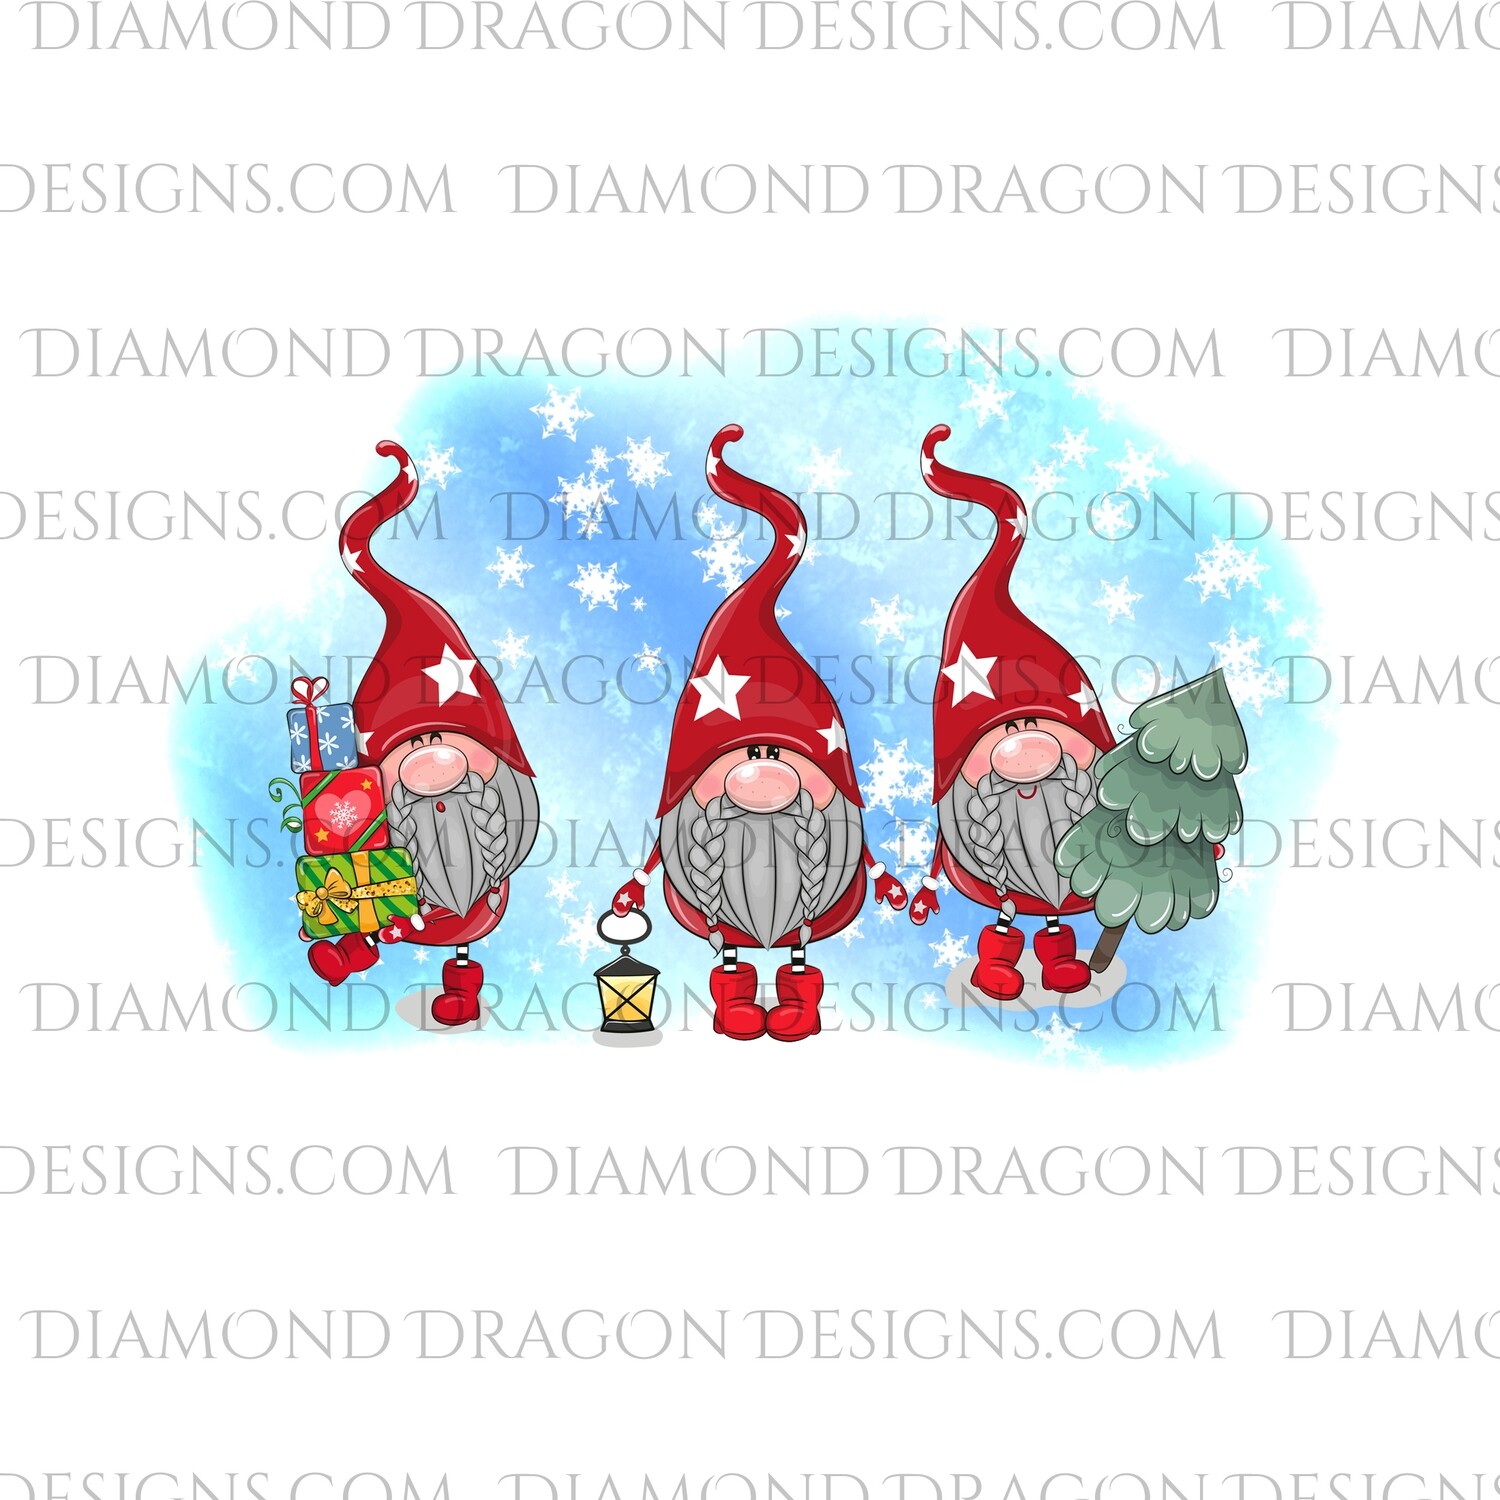 Gnomes - Snowflake Gnomes, 3 Gnomes, Digital Image